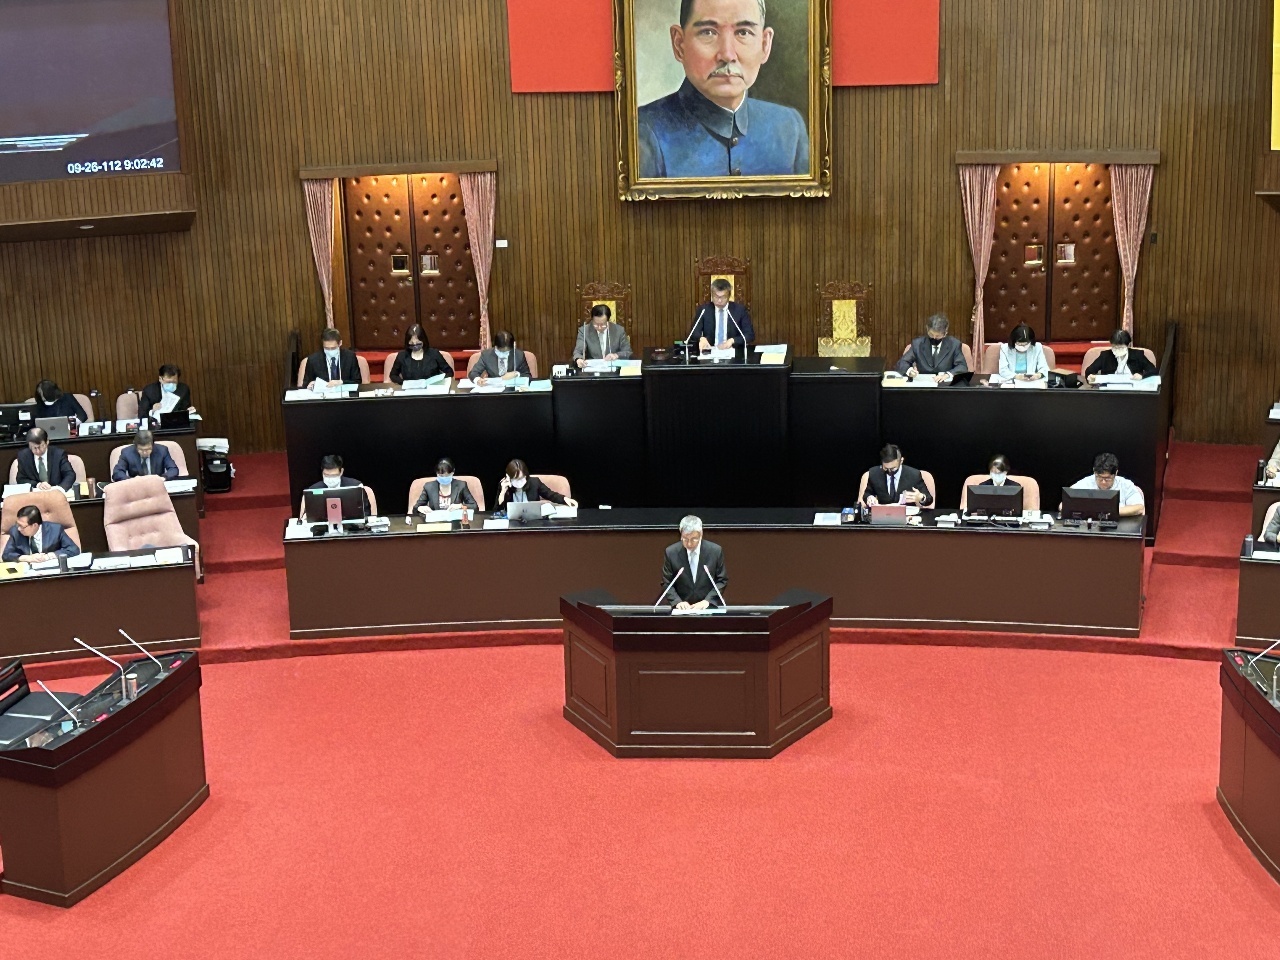 Thủ tướng Trần Kiến Nhân tham dự phiên họp của Viện Lập pháp để báo cáo và trả lời chất vấn về thực thi chính sách sáng ngày 26/09 (Ảnh: PV Rti)